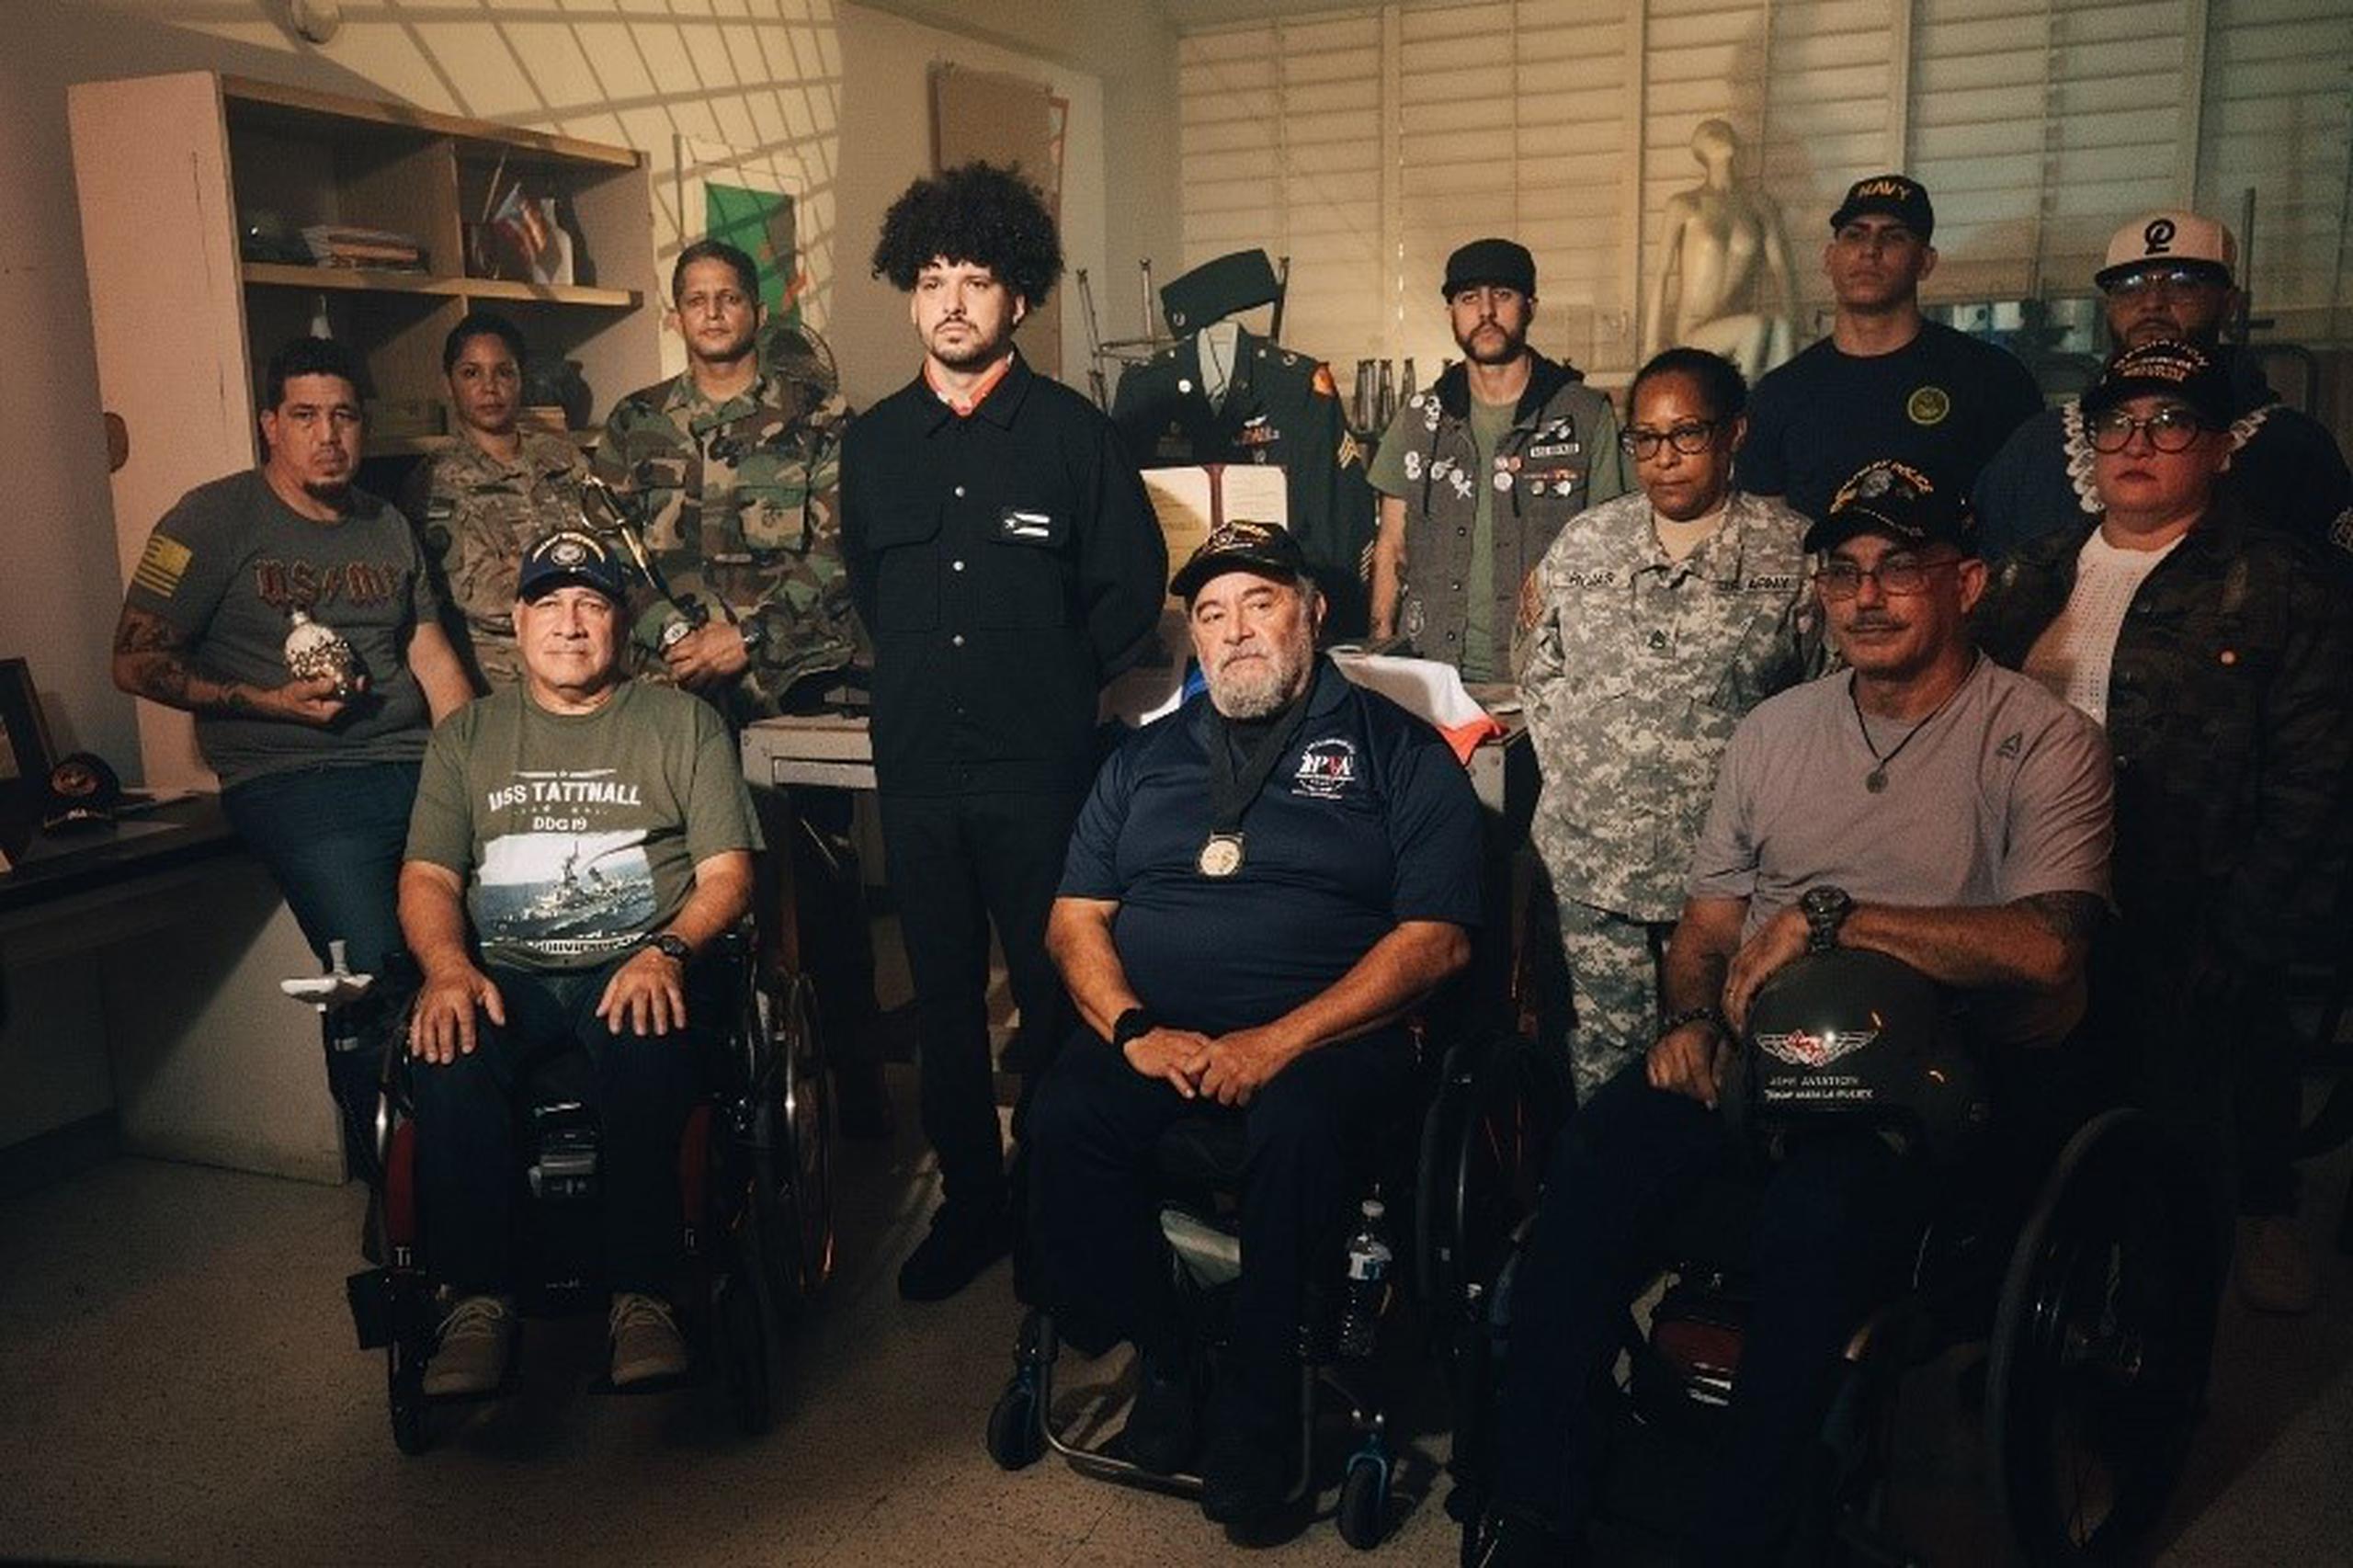 Reunió a 20 veteranos de guerra para la realización del vídeo.